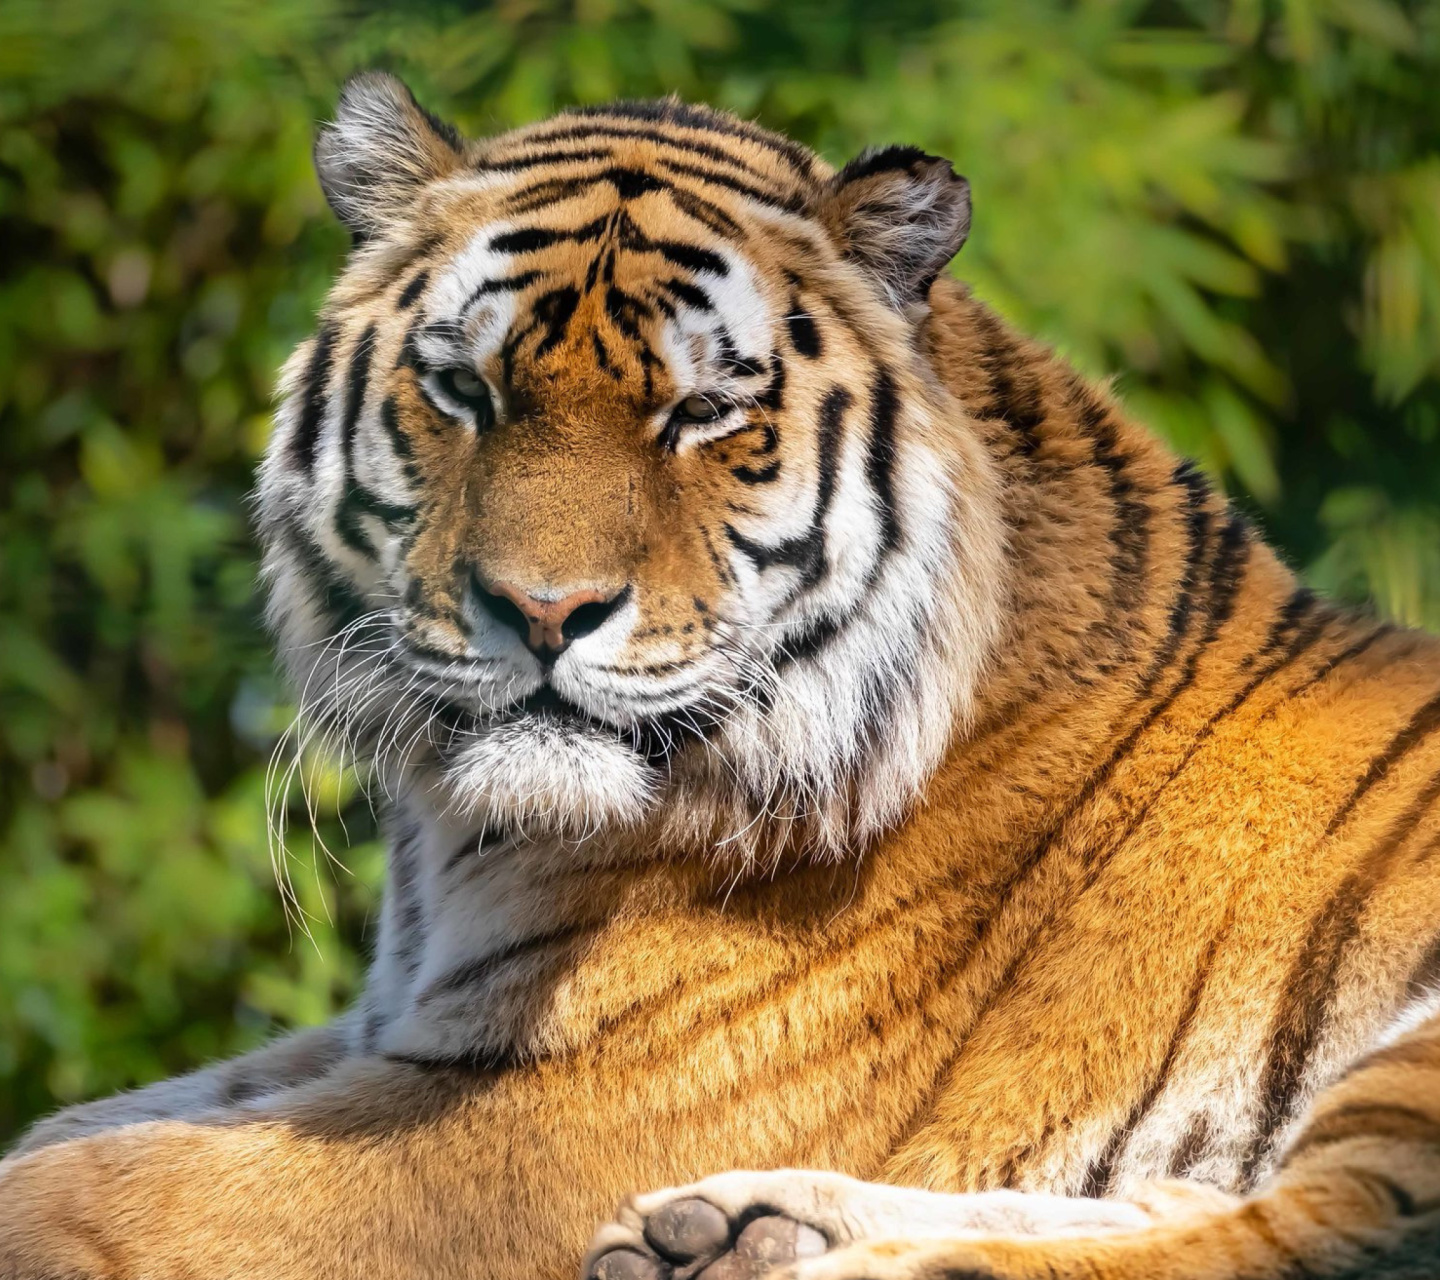 Malay Tiger at the New York Zoo screenshot #1 1440x1280